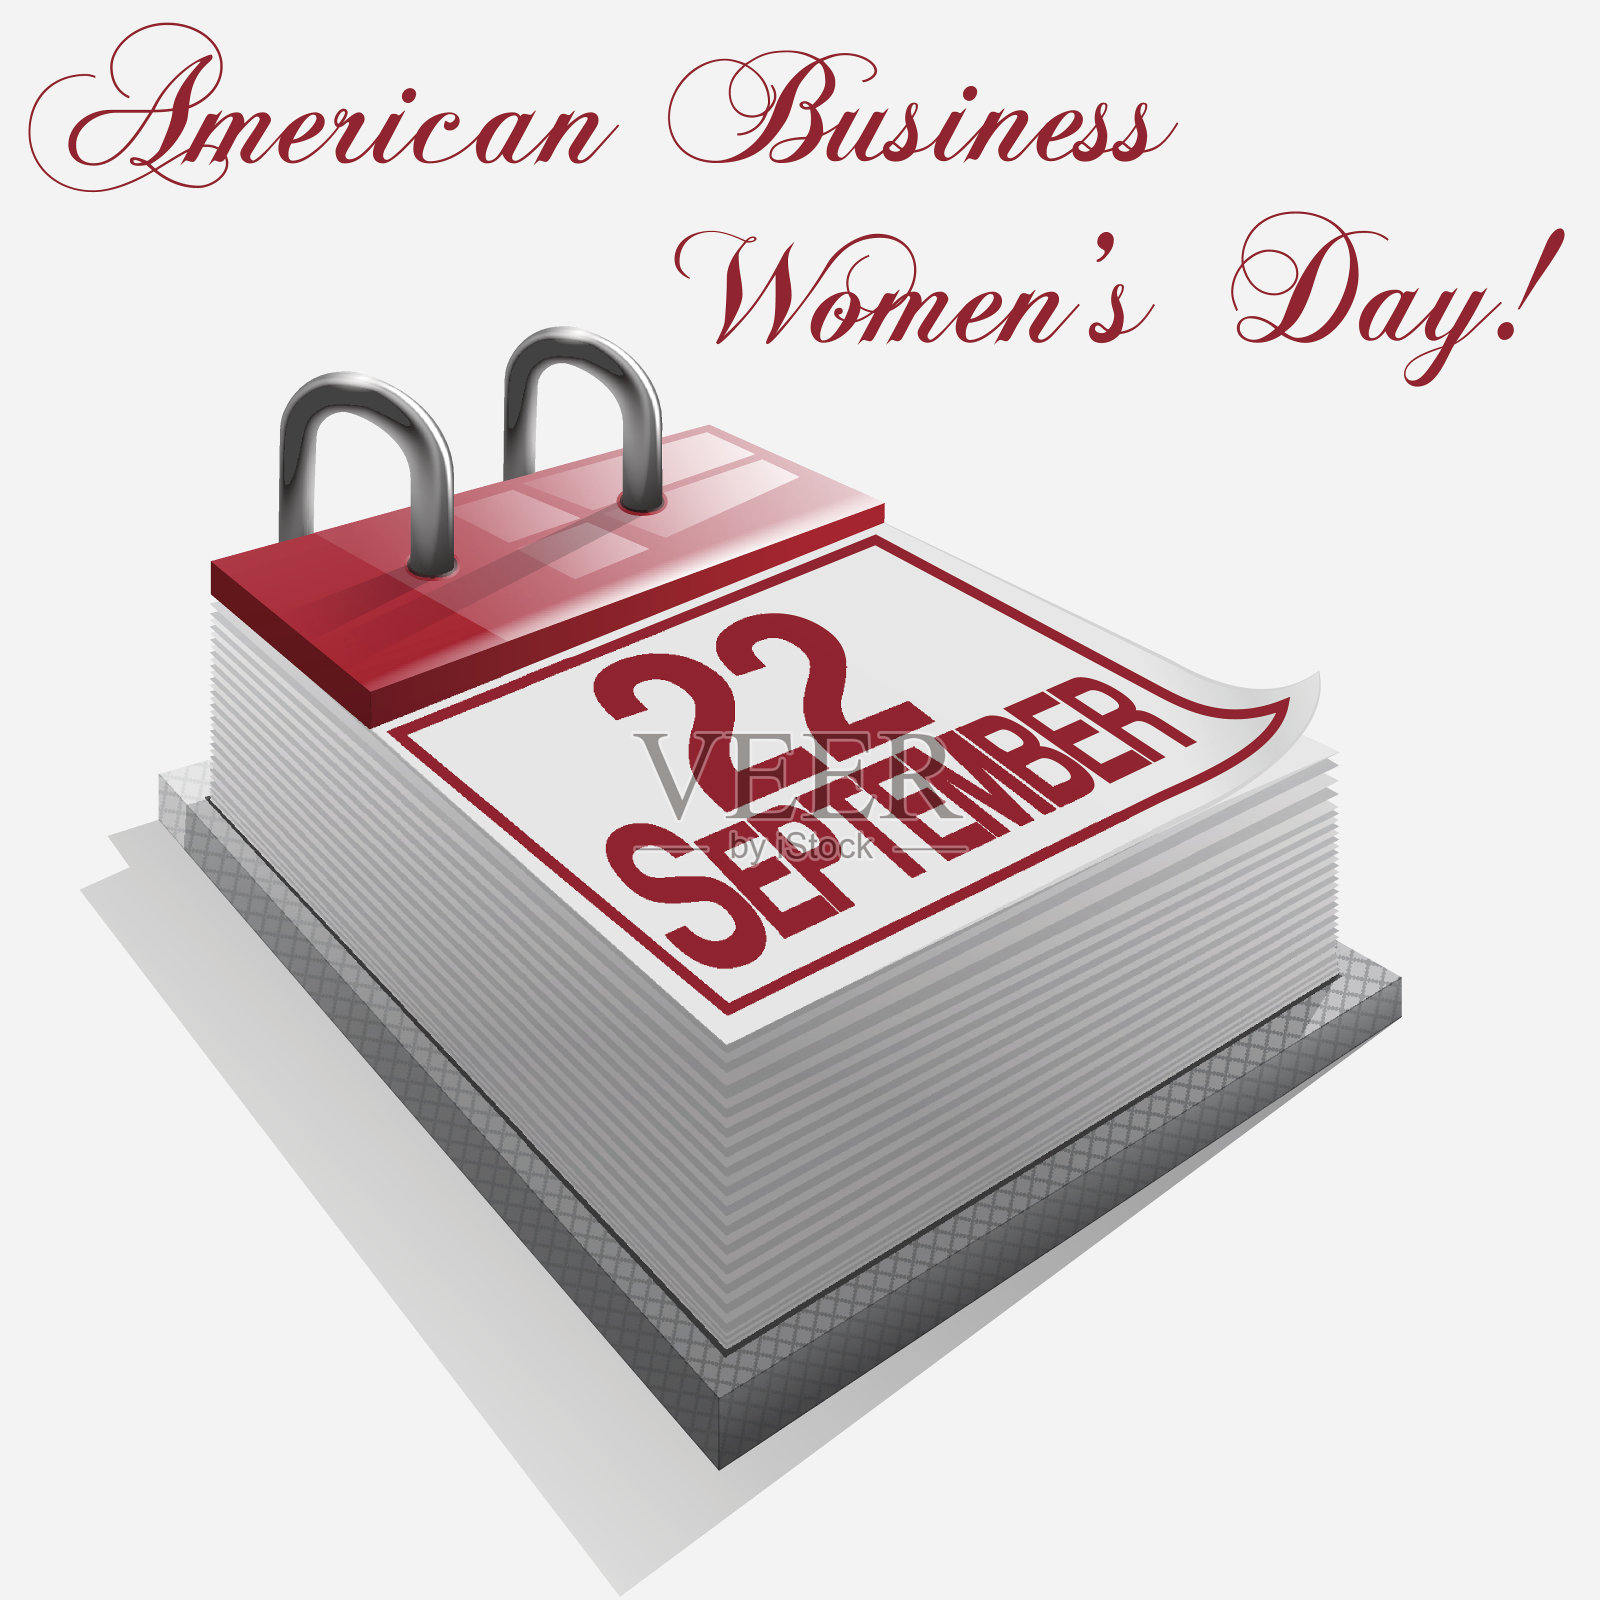 日历9月22日美国商业妇女节。向量设计模板素材